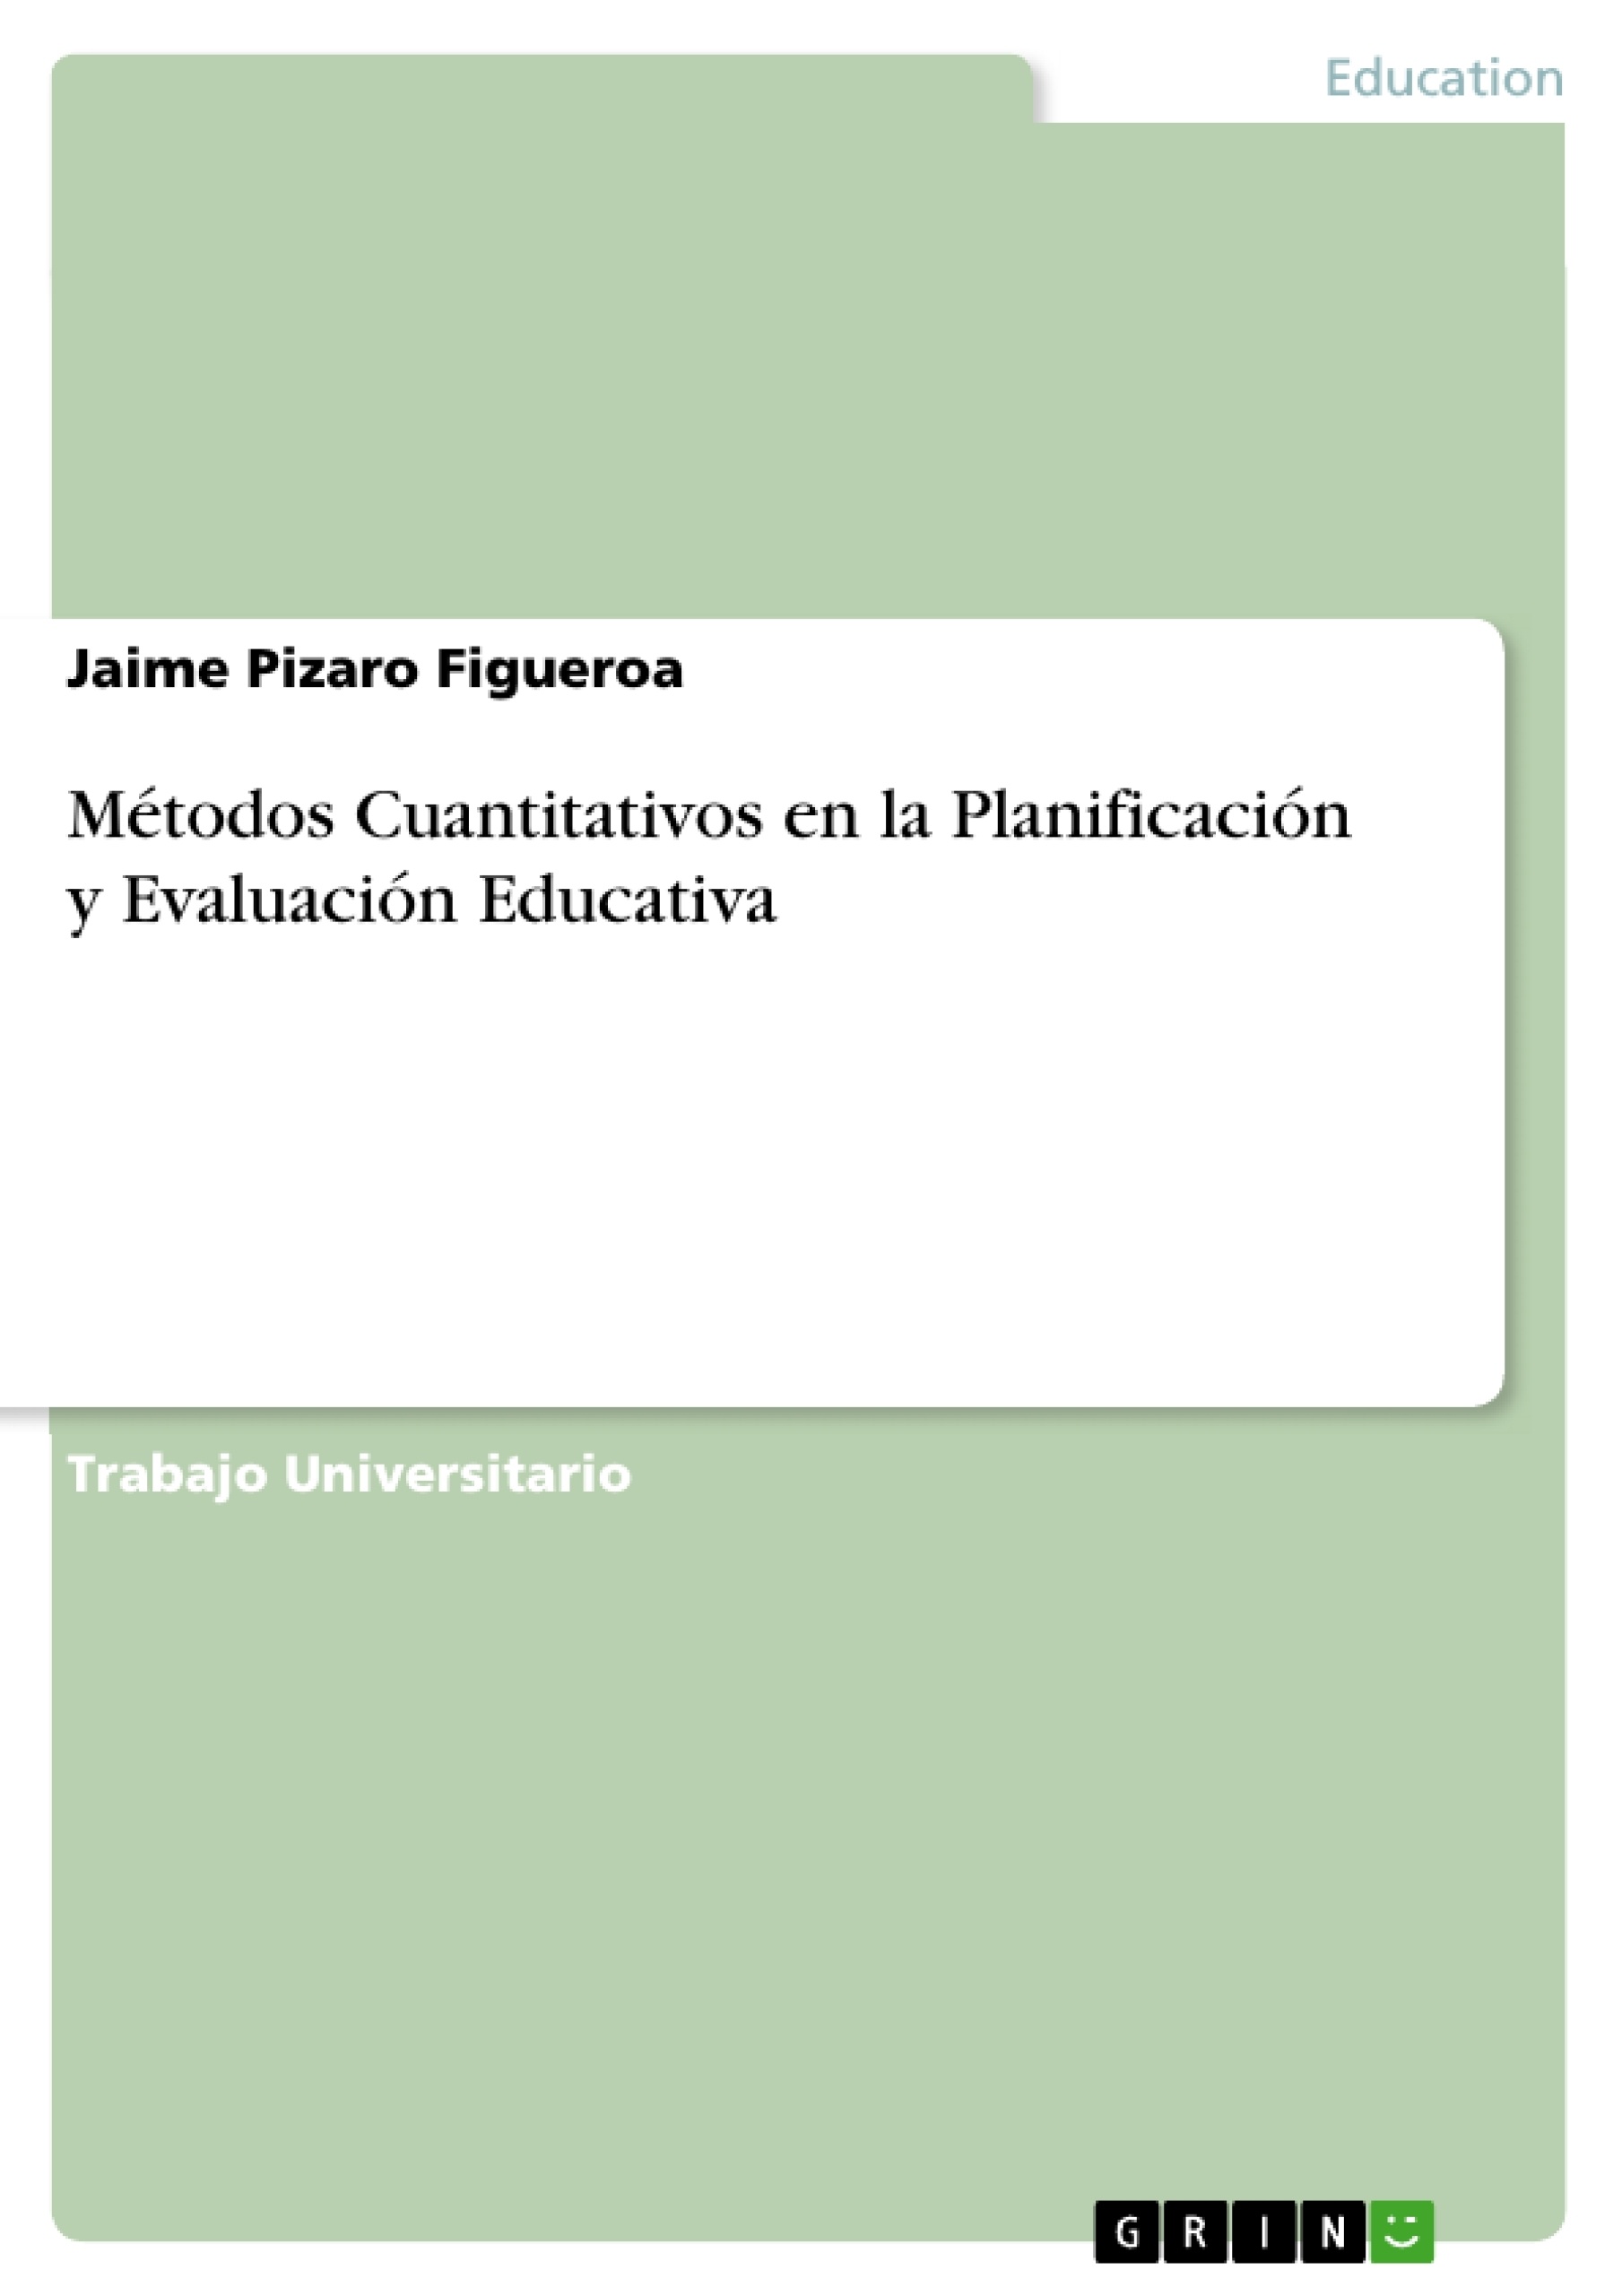 Titre: Métodos Cuantitativos en la Planificación y Evaluación Educativa